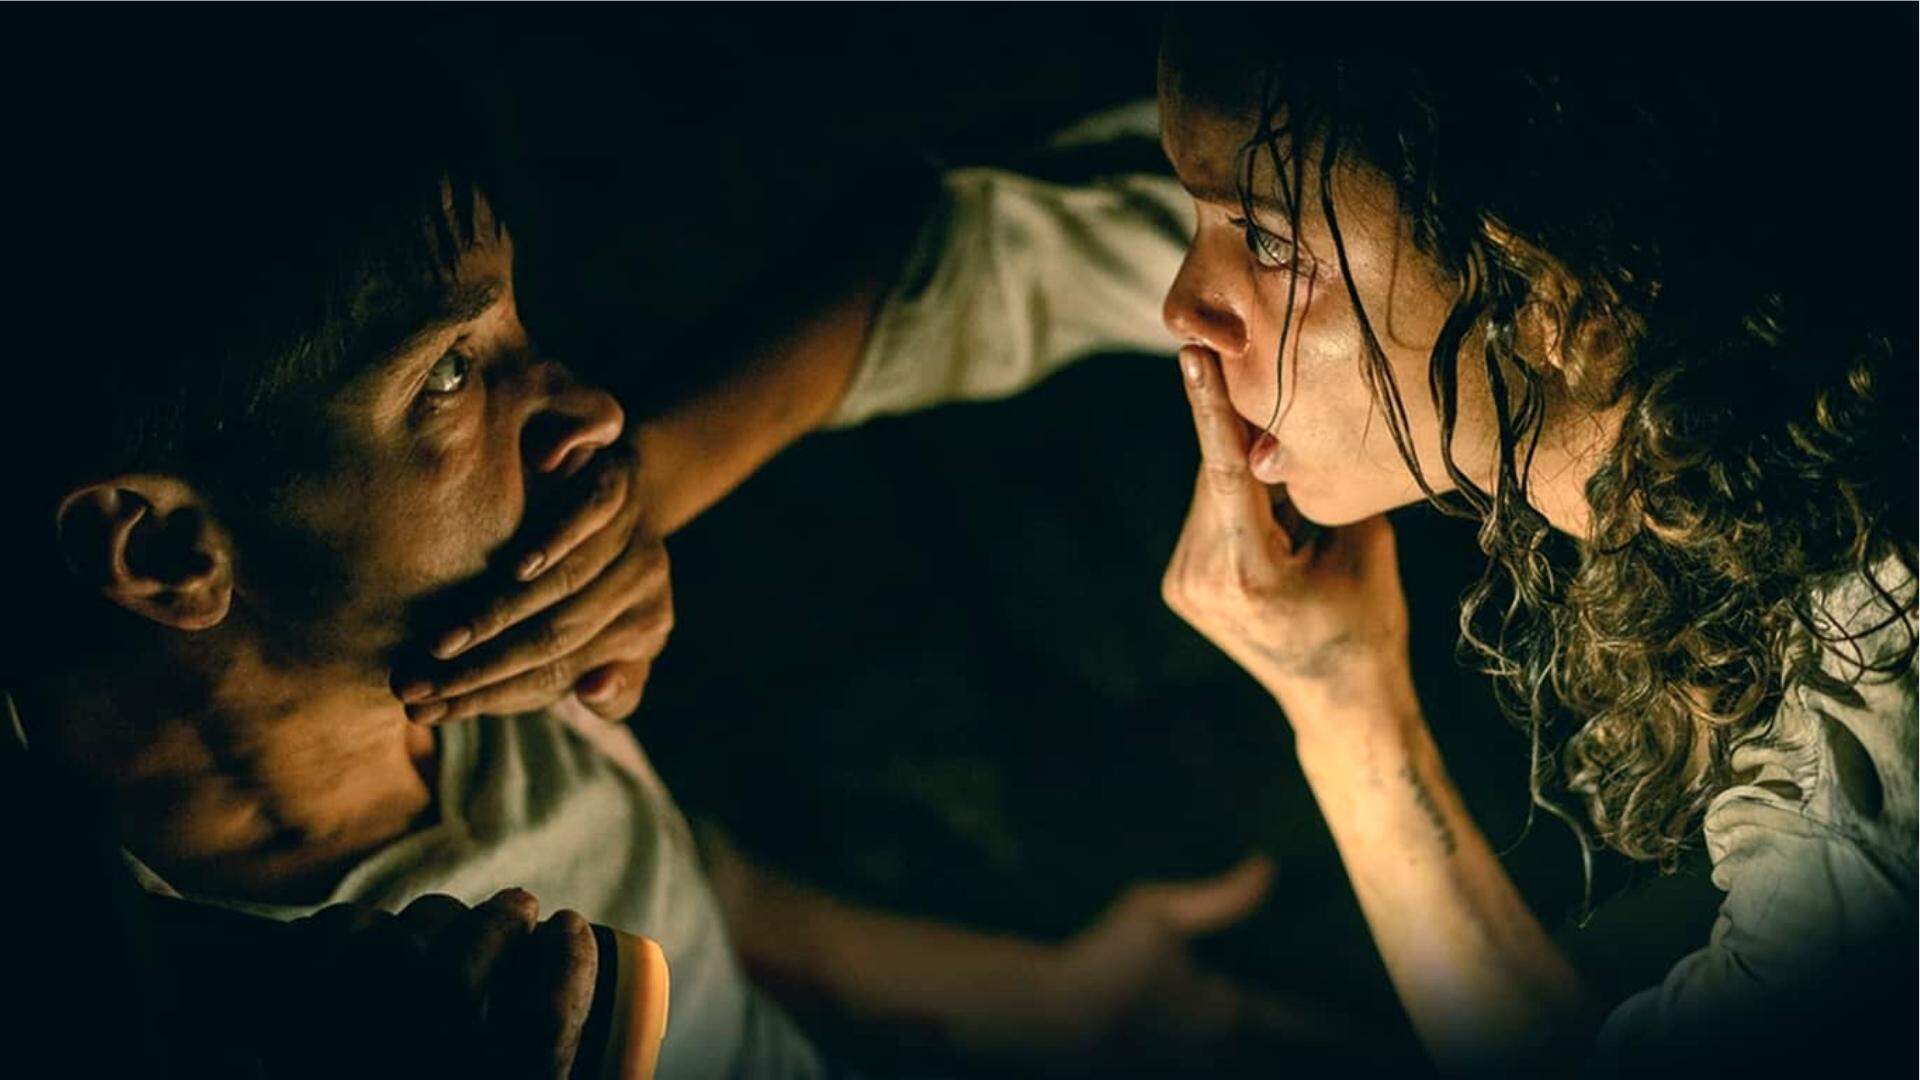 Info Star+ Brasil on X: 🚨 Star+ anuncia 'Noites Brutais' (Barbarian),  novo filme de terror com Bill Skarsgård, Georgina Campbell e Justin Long  para 26 de outubro. No Brasil, o longa será